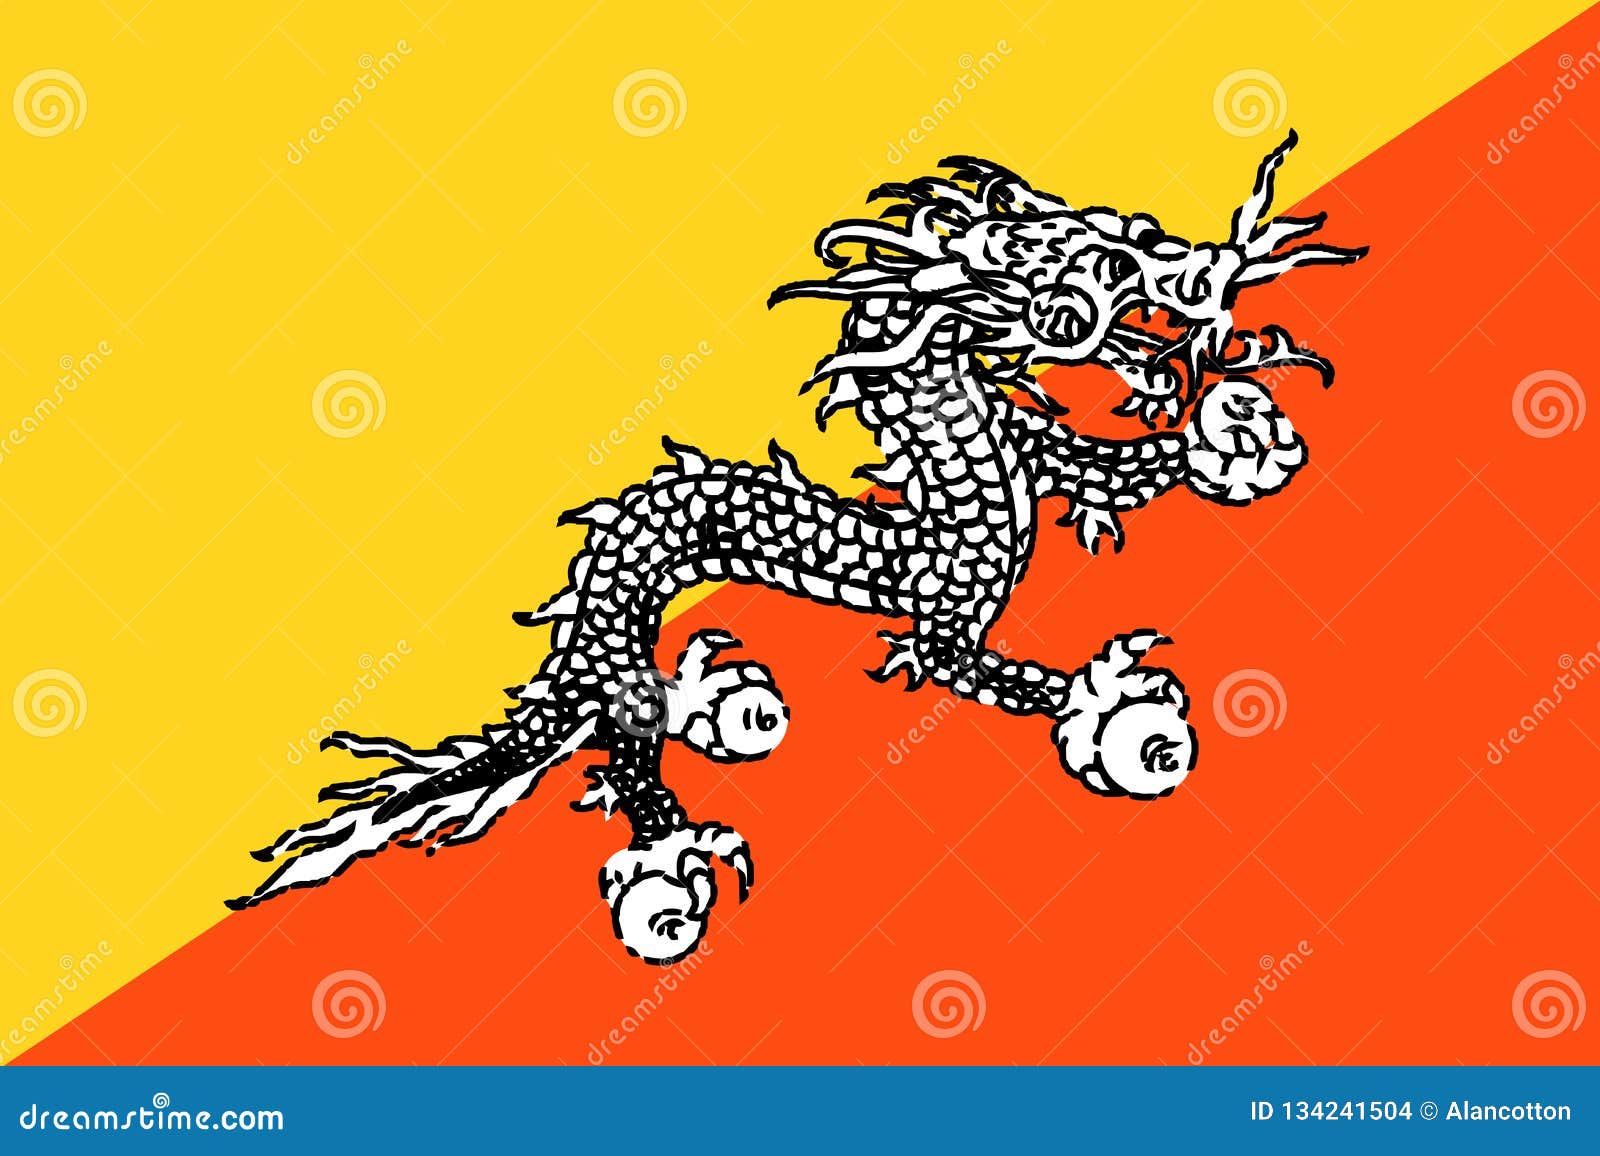 Hãy chiêm ngưỡng cờ quốc kỳ Bhutan với hình ảnh đầy uy nghiêm và đẳng cấp. Bạn sẽ được truyền cảm hứng về sự kiêu hãnh và lòng yêu nước của người dân Bhutan khi ngắm nhìn cờ quốc kỳ được đưa lên trong những dịp lễ tế trọng đại.